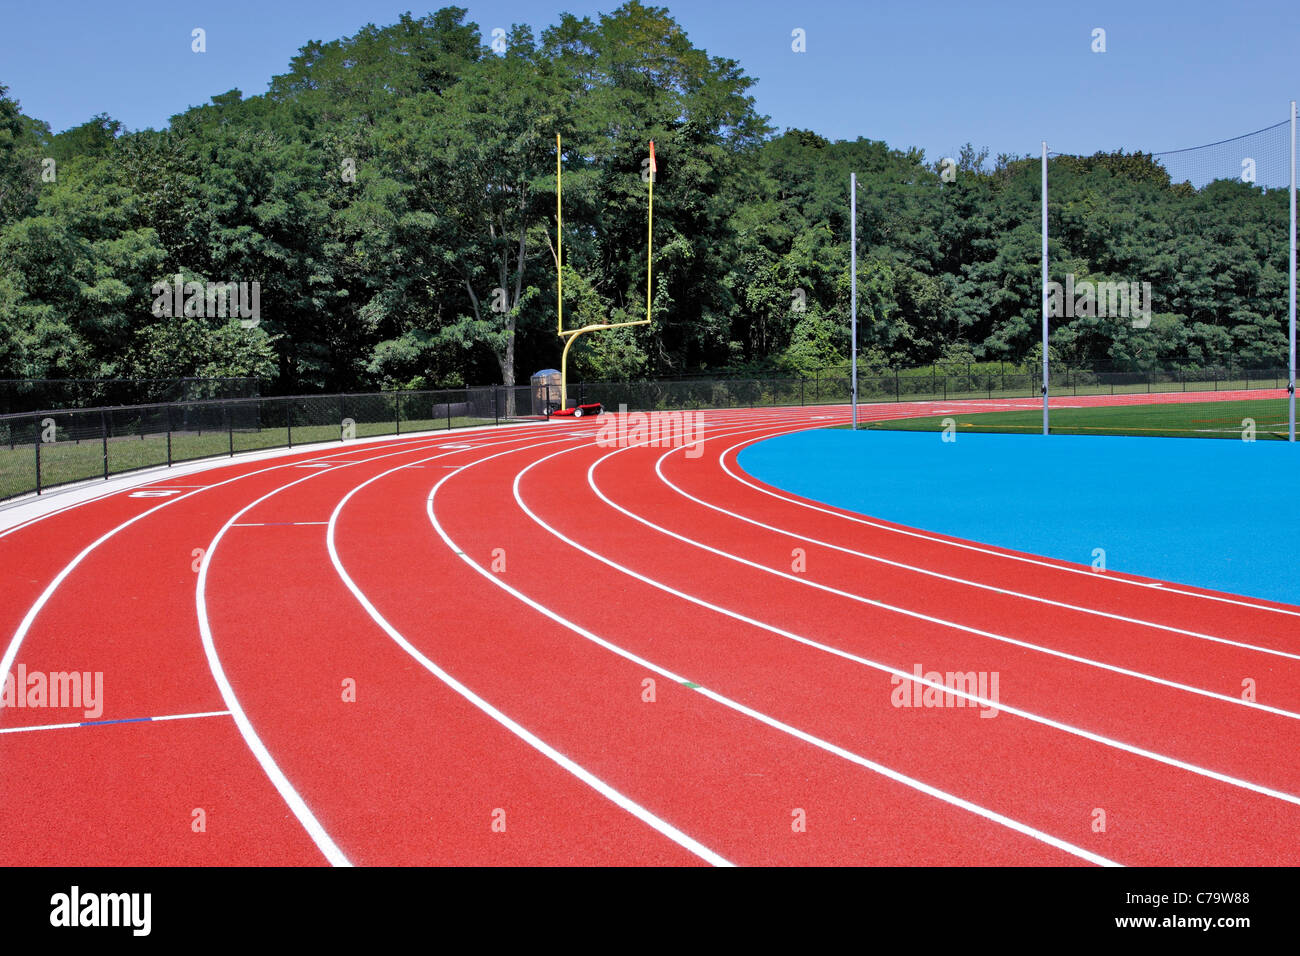 Track and field stadium Stony Brook University Long Island NY Stock Photo